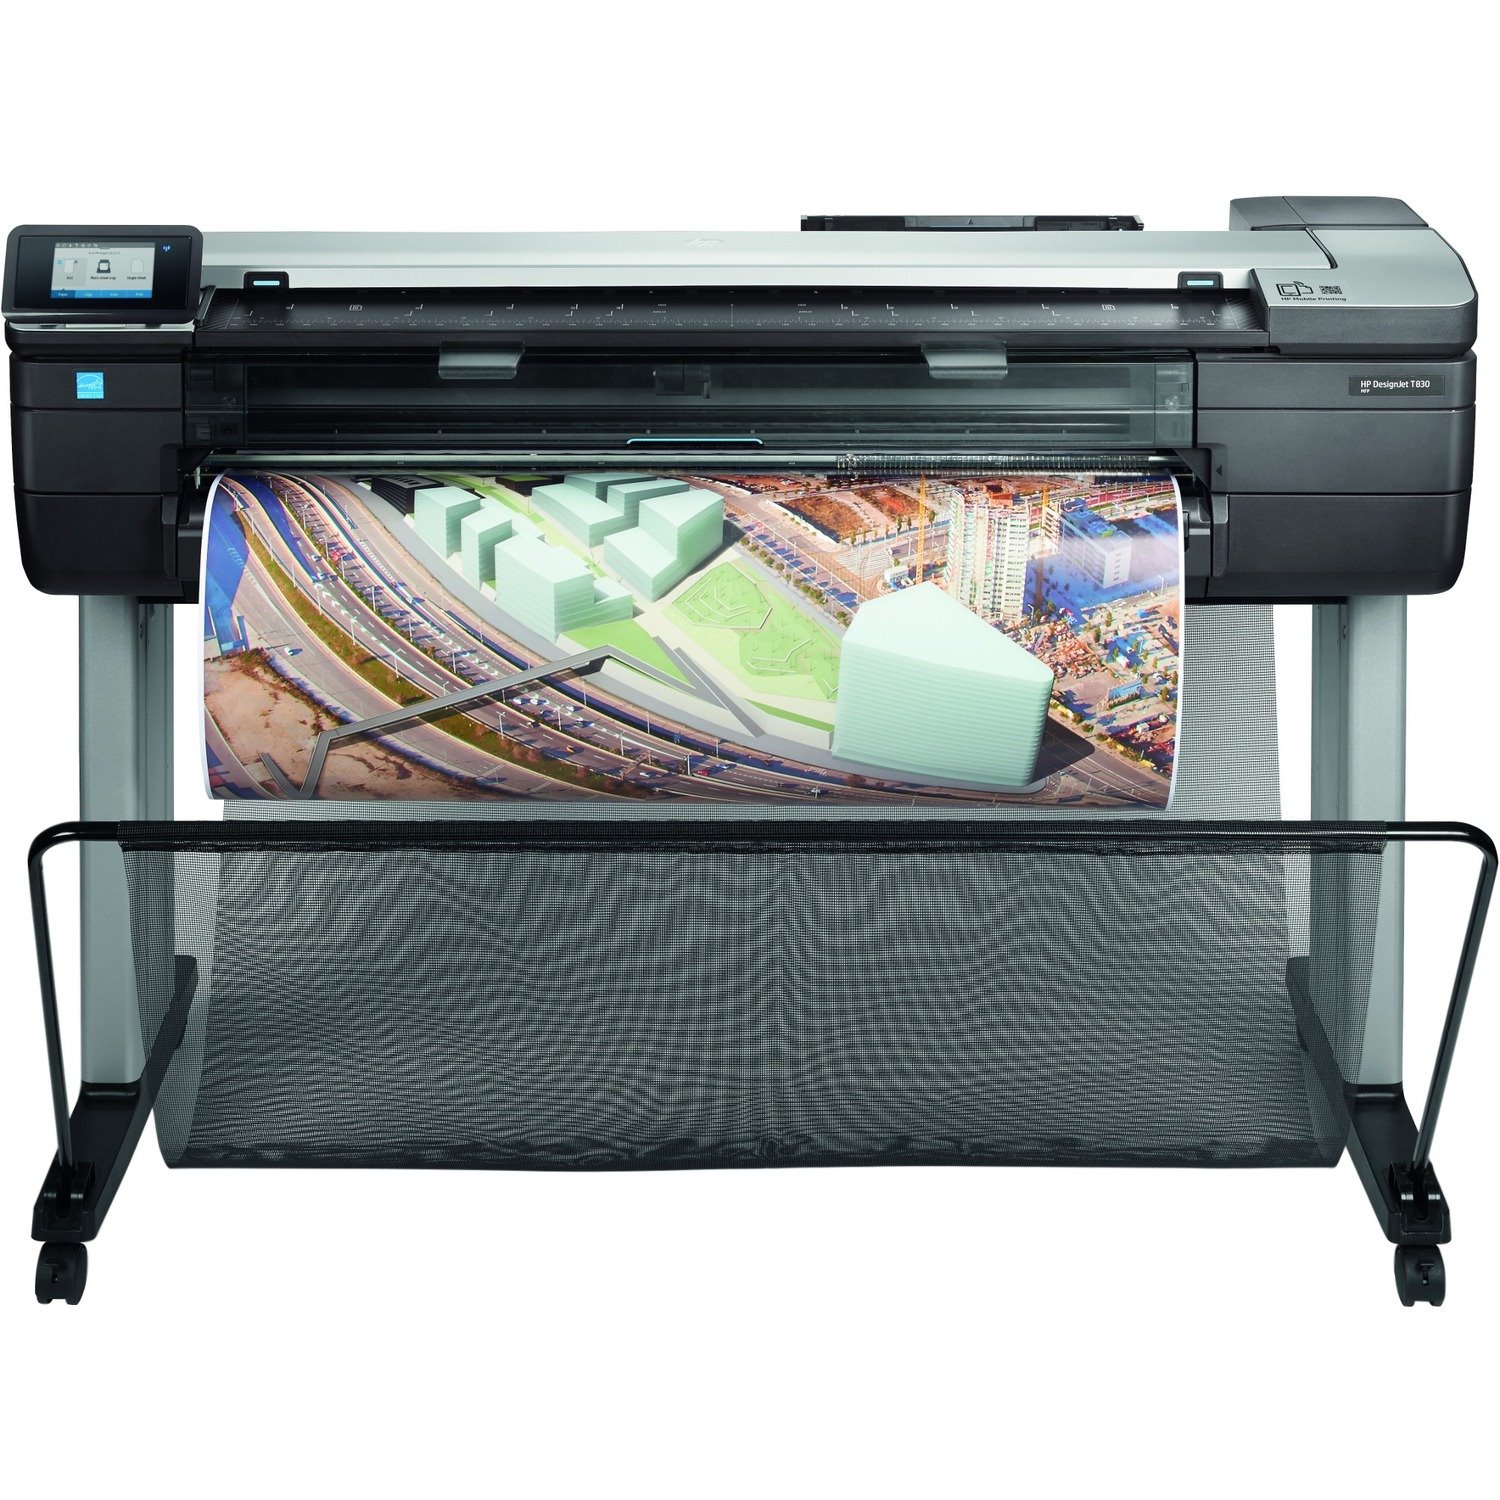 HP Designjet T830 Inkjet Large Format Printer - Includes Printer, Copier, Scanner - 914.40 mm (36") Print Width - Colour